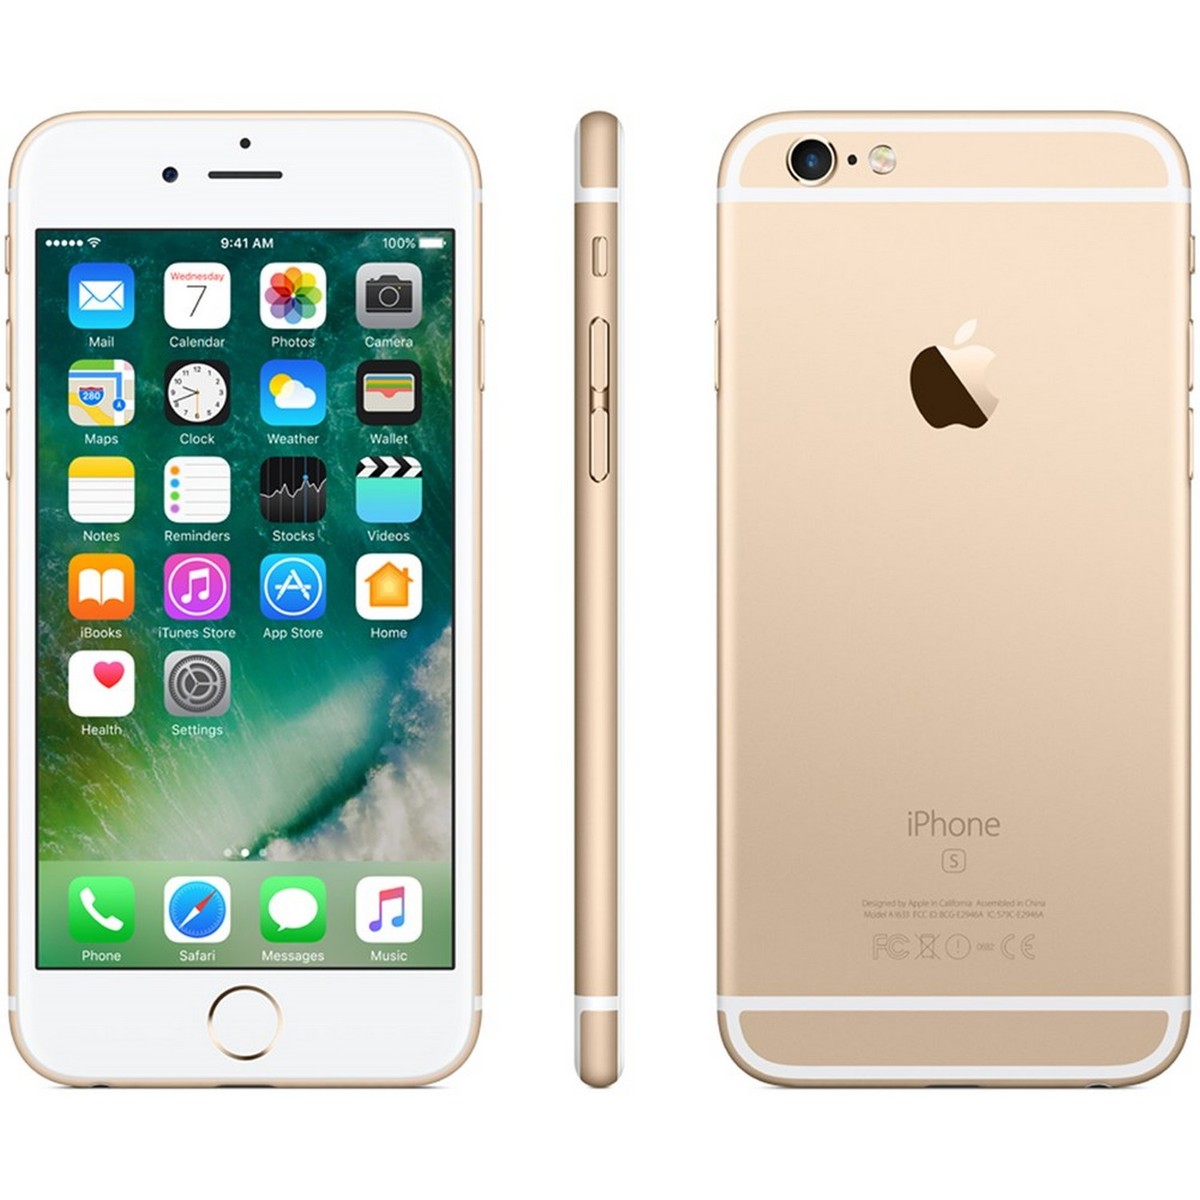 Apple iPhone 6S Plus 32GB Gold